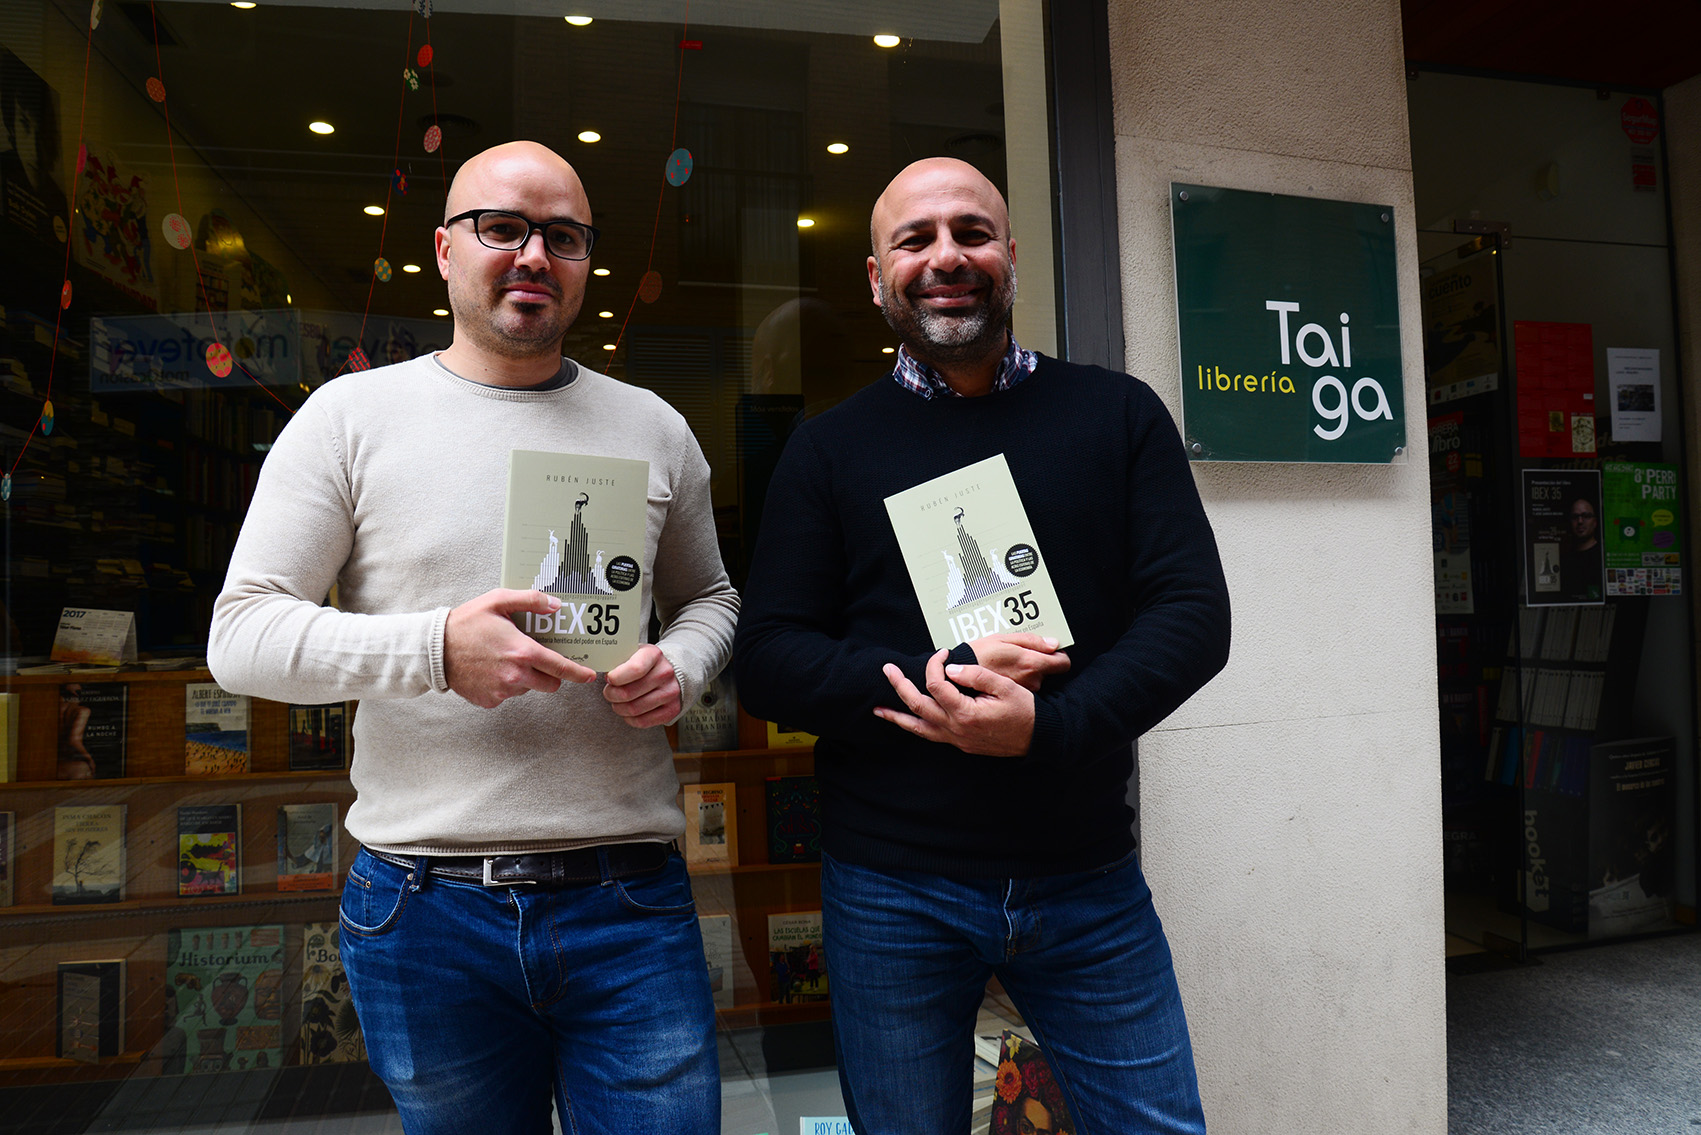 Rubén Juste, junto a José García Molina, en la presentación en Toledo de su libro "Ibex 35. Una historia herética del poder en España".